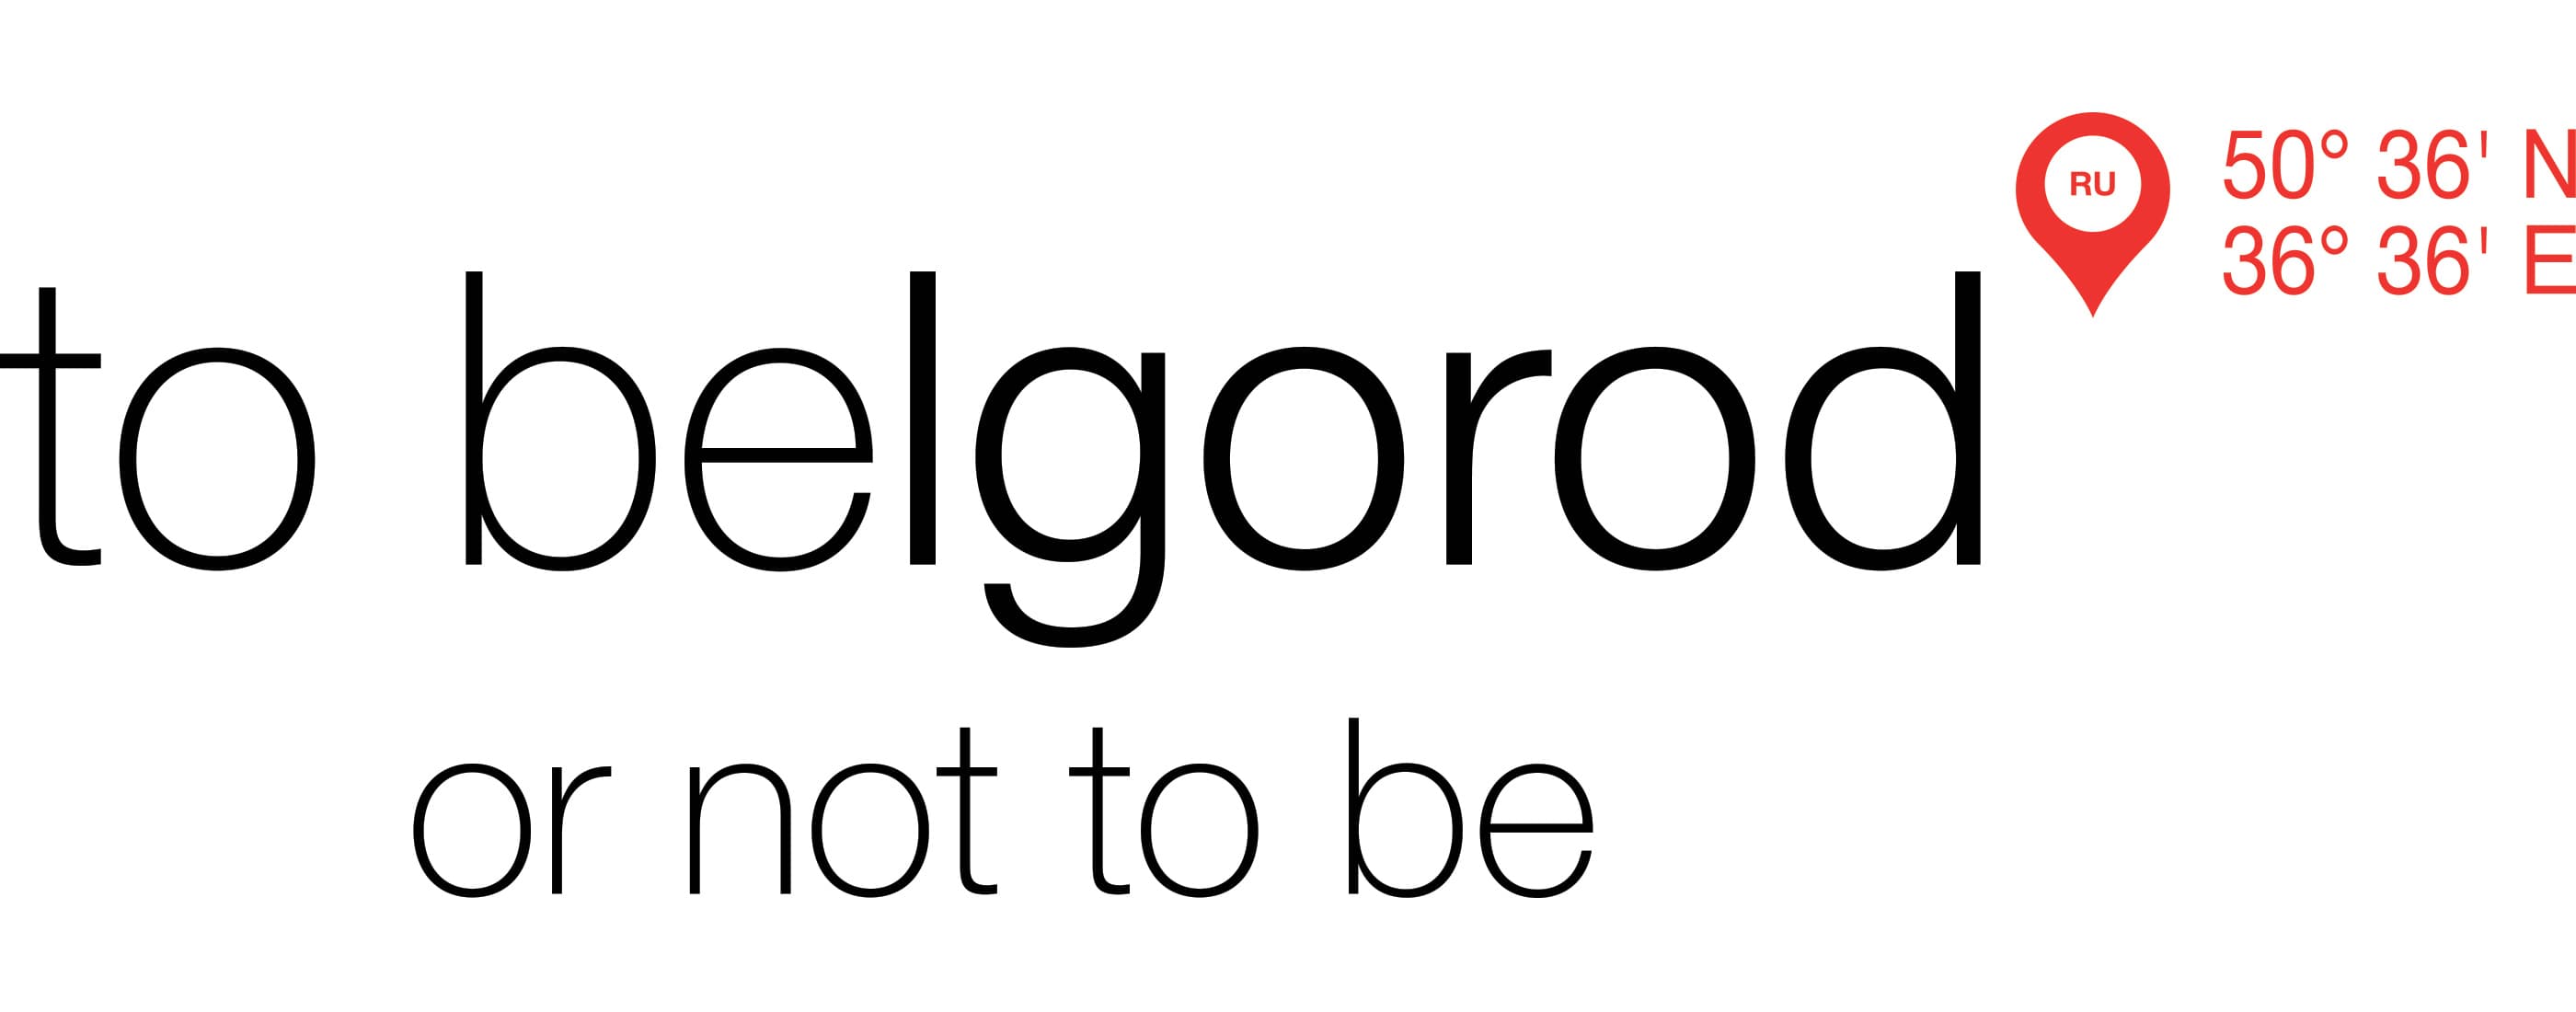 Логотип to Belgorod or not to be